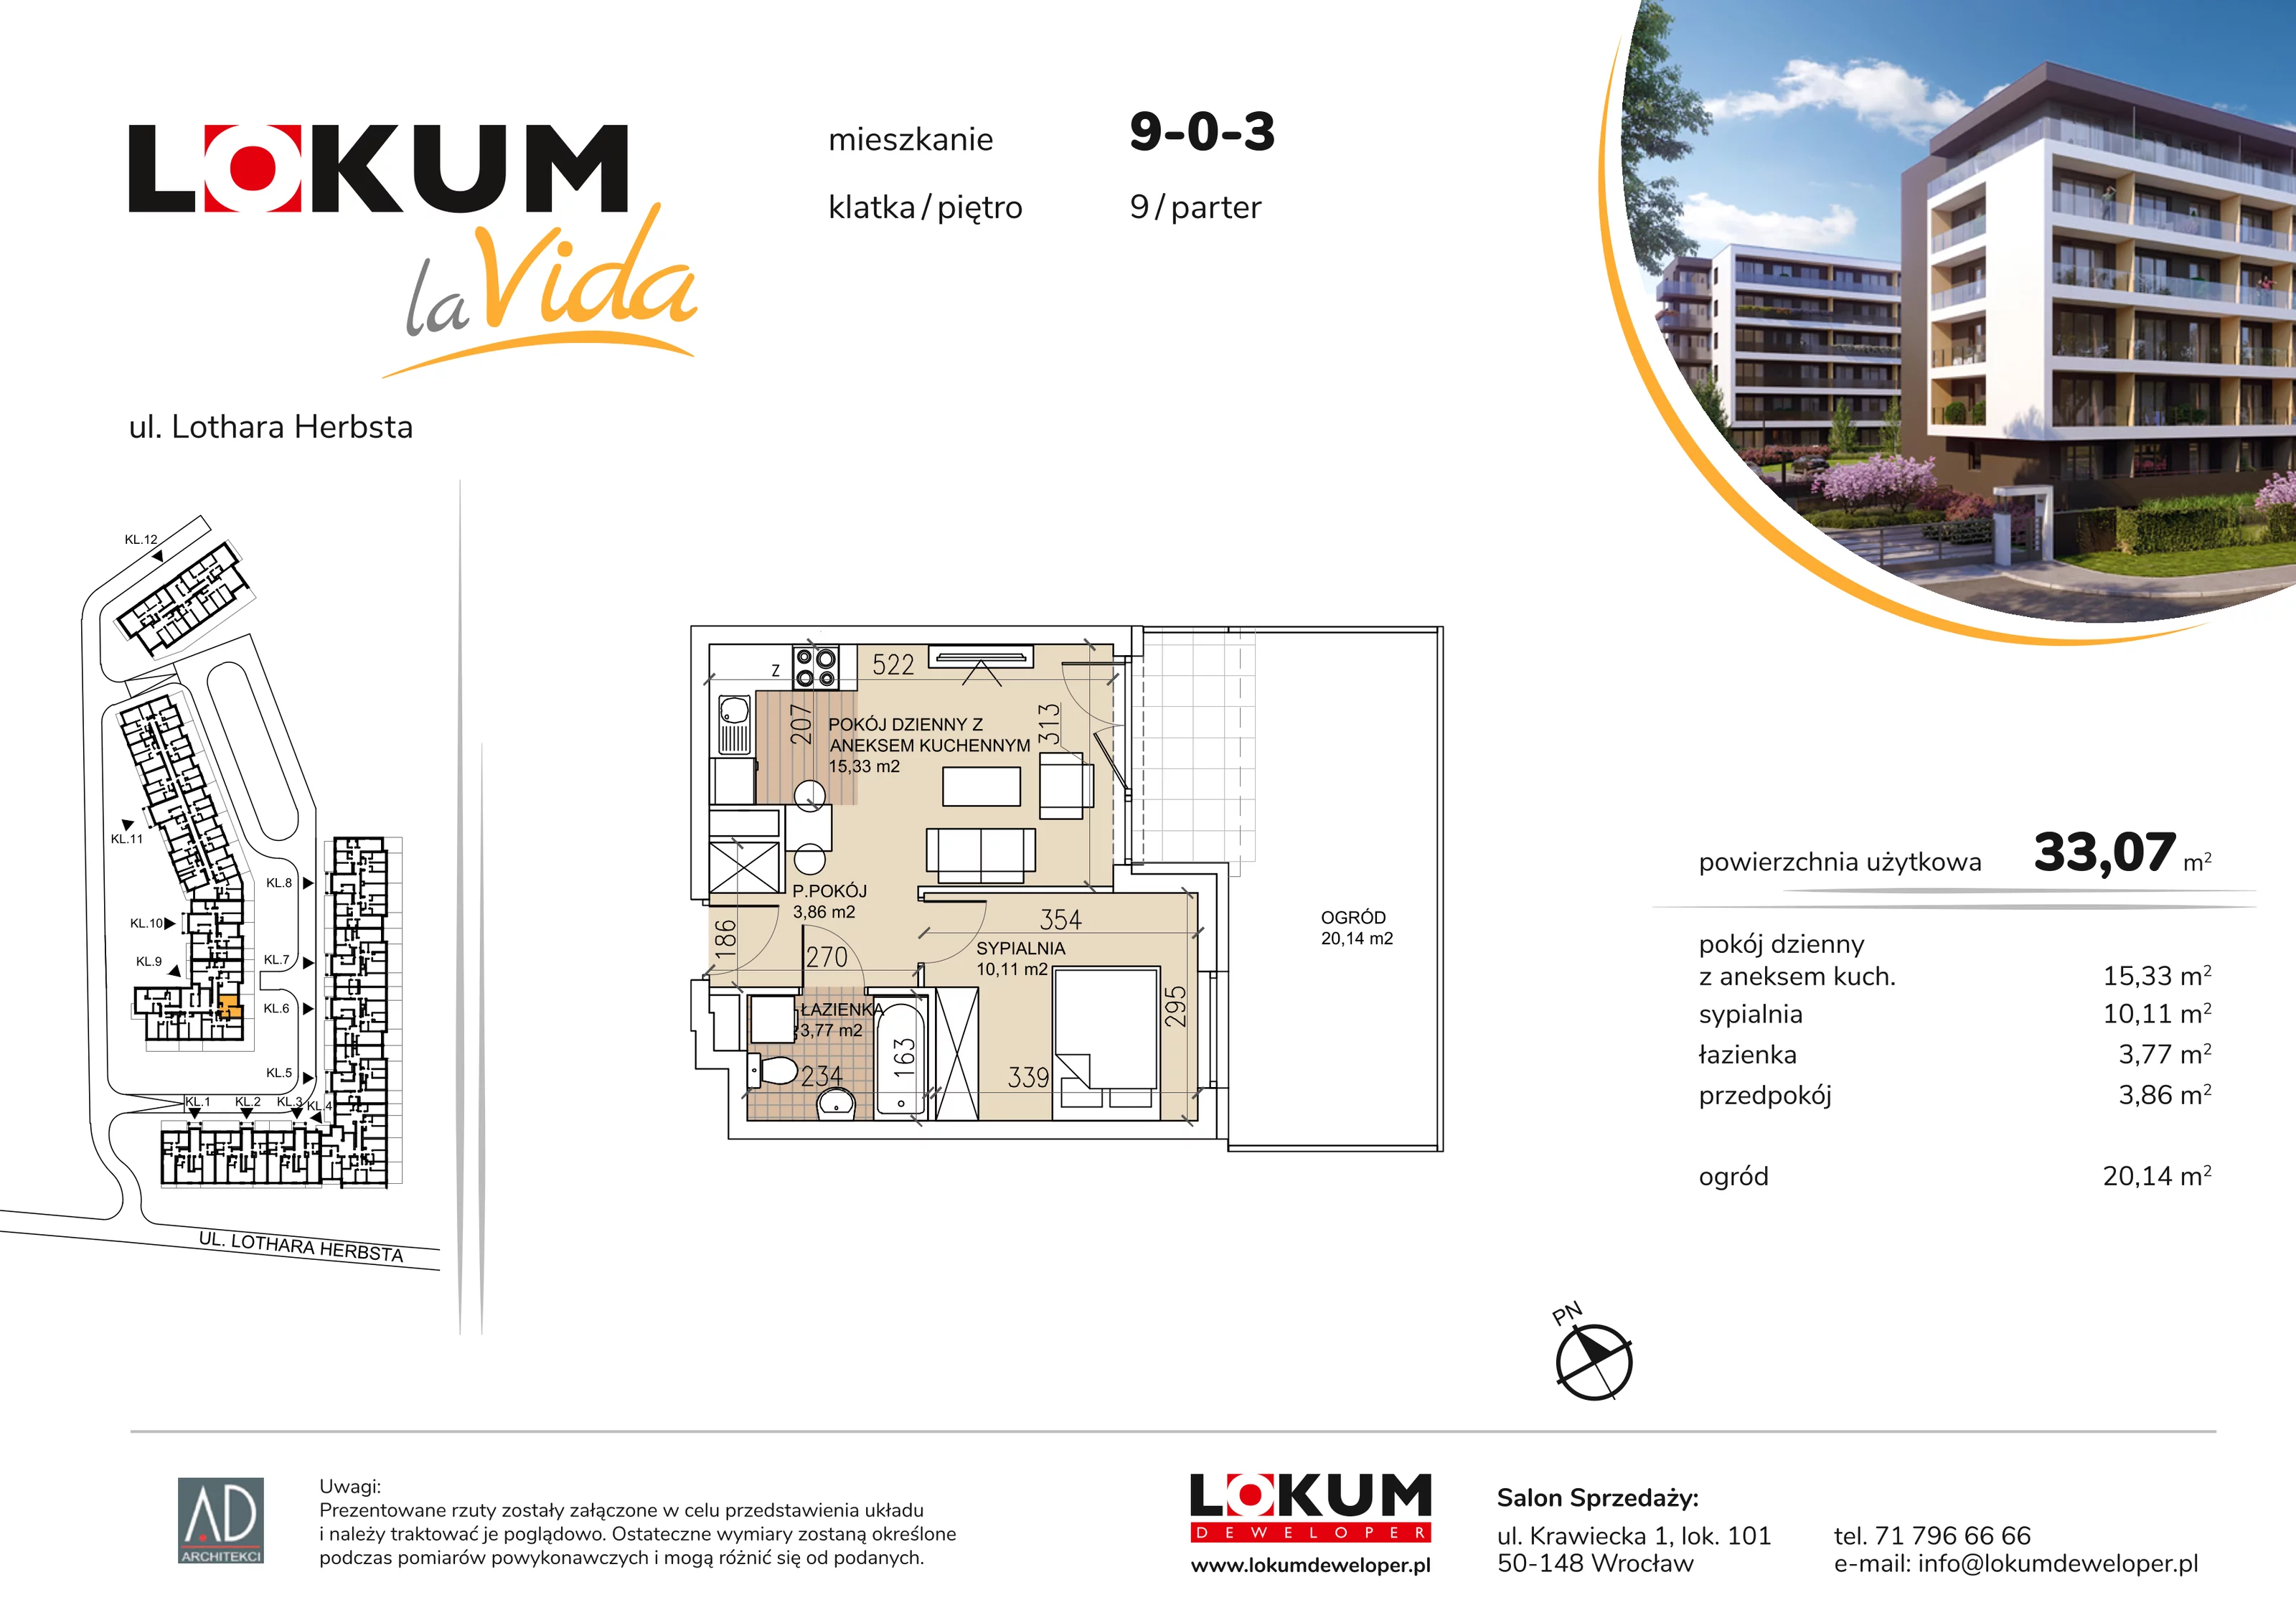 Mieszkanie 33,07 m², parter, oferta nr 9-0-3, Lokum la Vida, Wrocław, Sołtysowice, ul. Lothara Herbsta